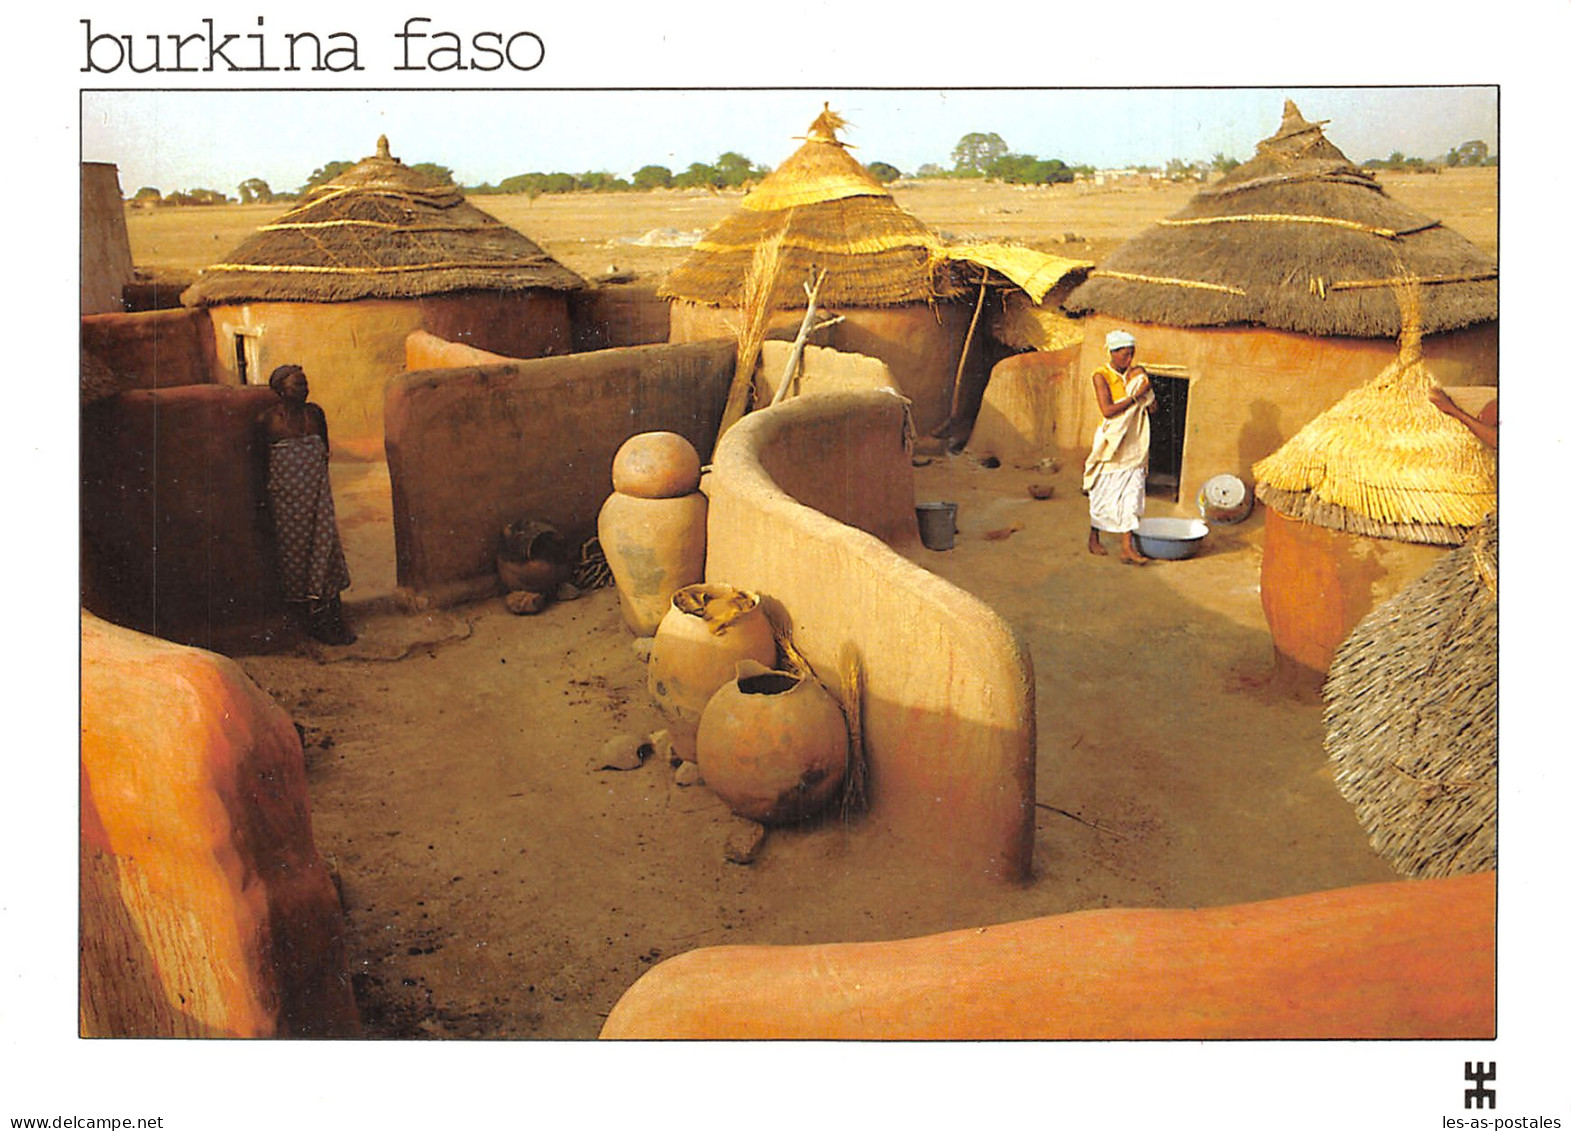 BURKINA FASO - Burkina Faso